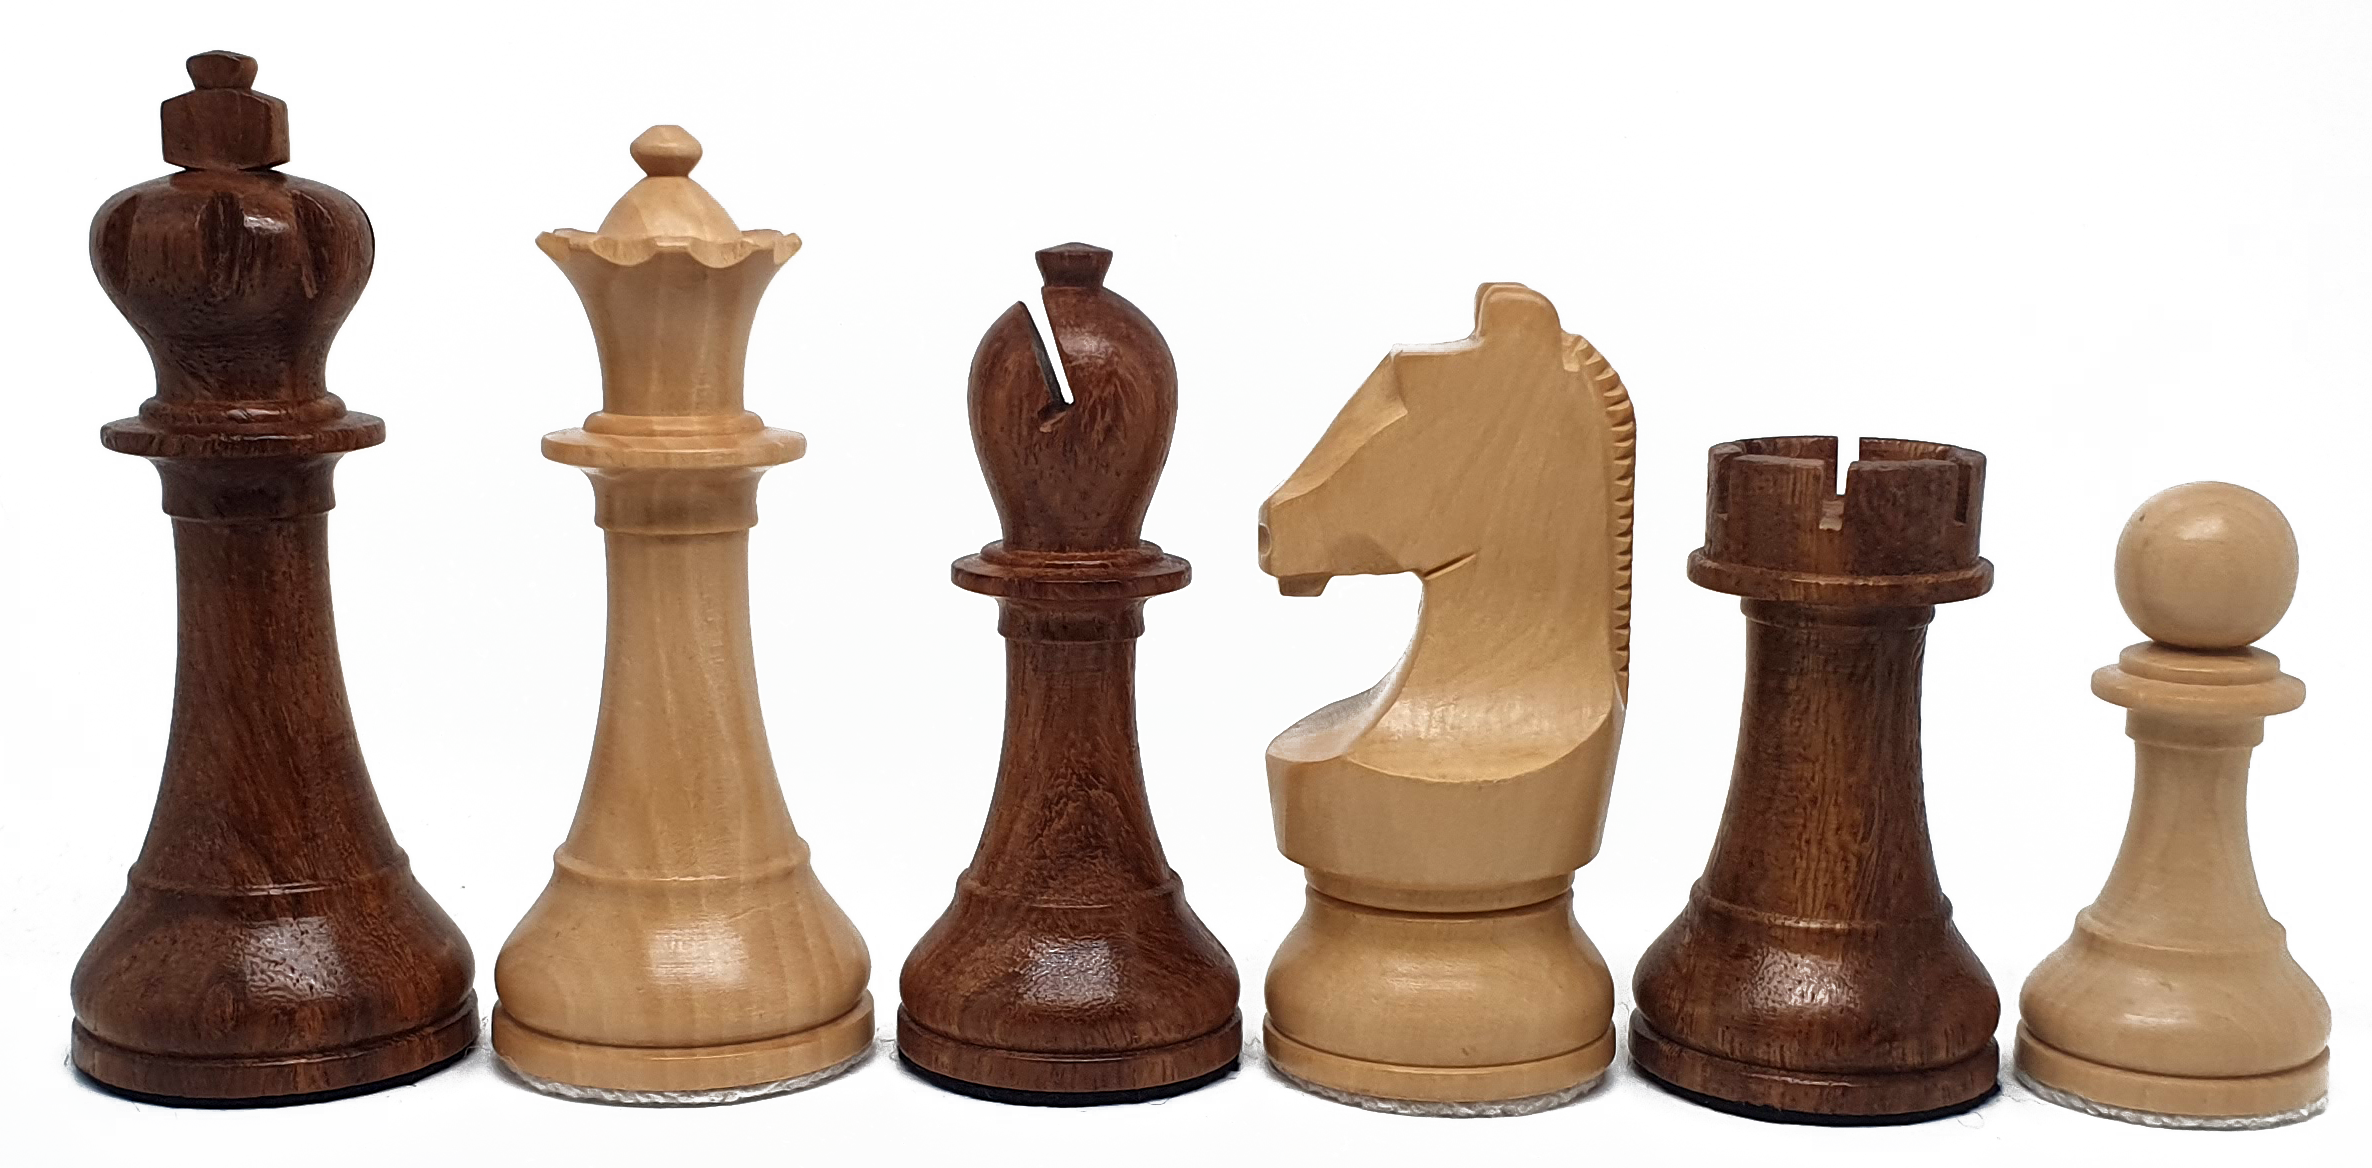 VI/ Piezas de ajedrez modelo Carlsen-Nepo "3,75" Shisham. 5171